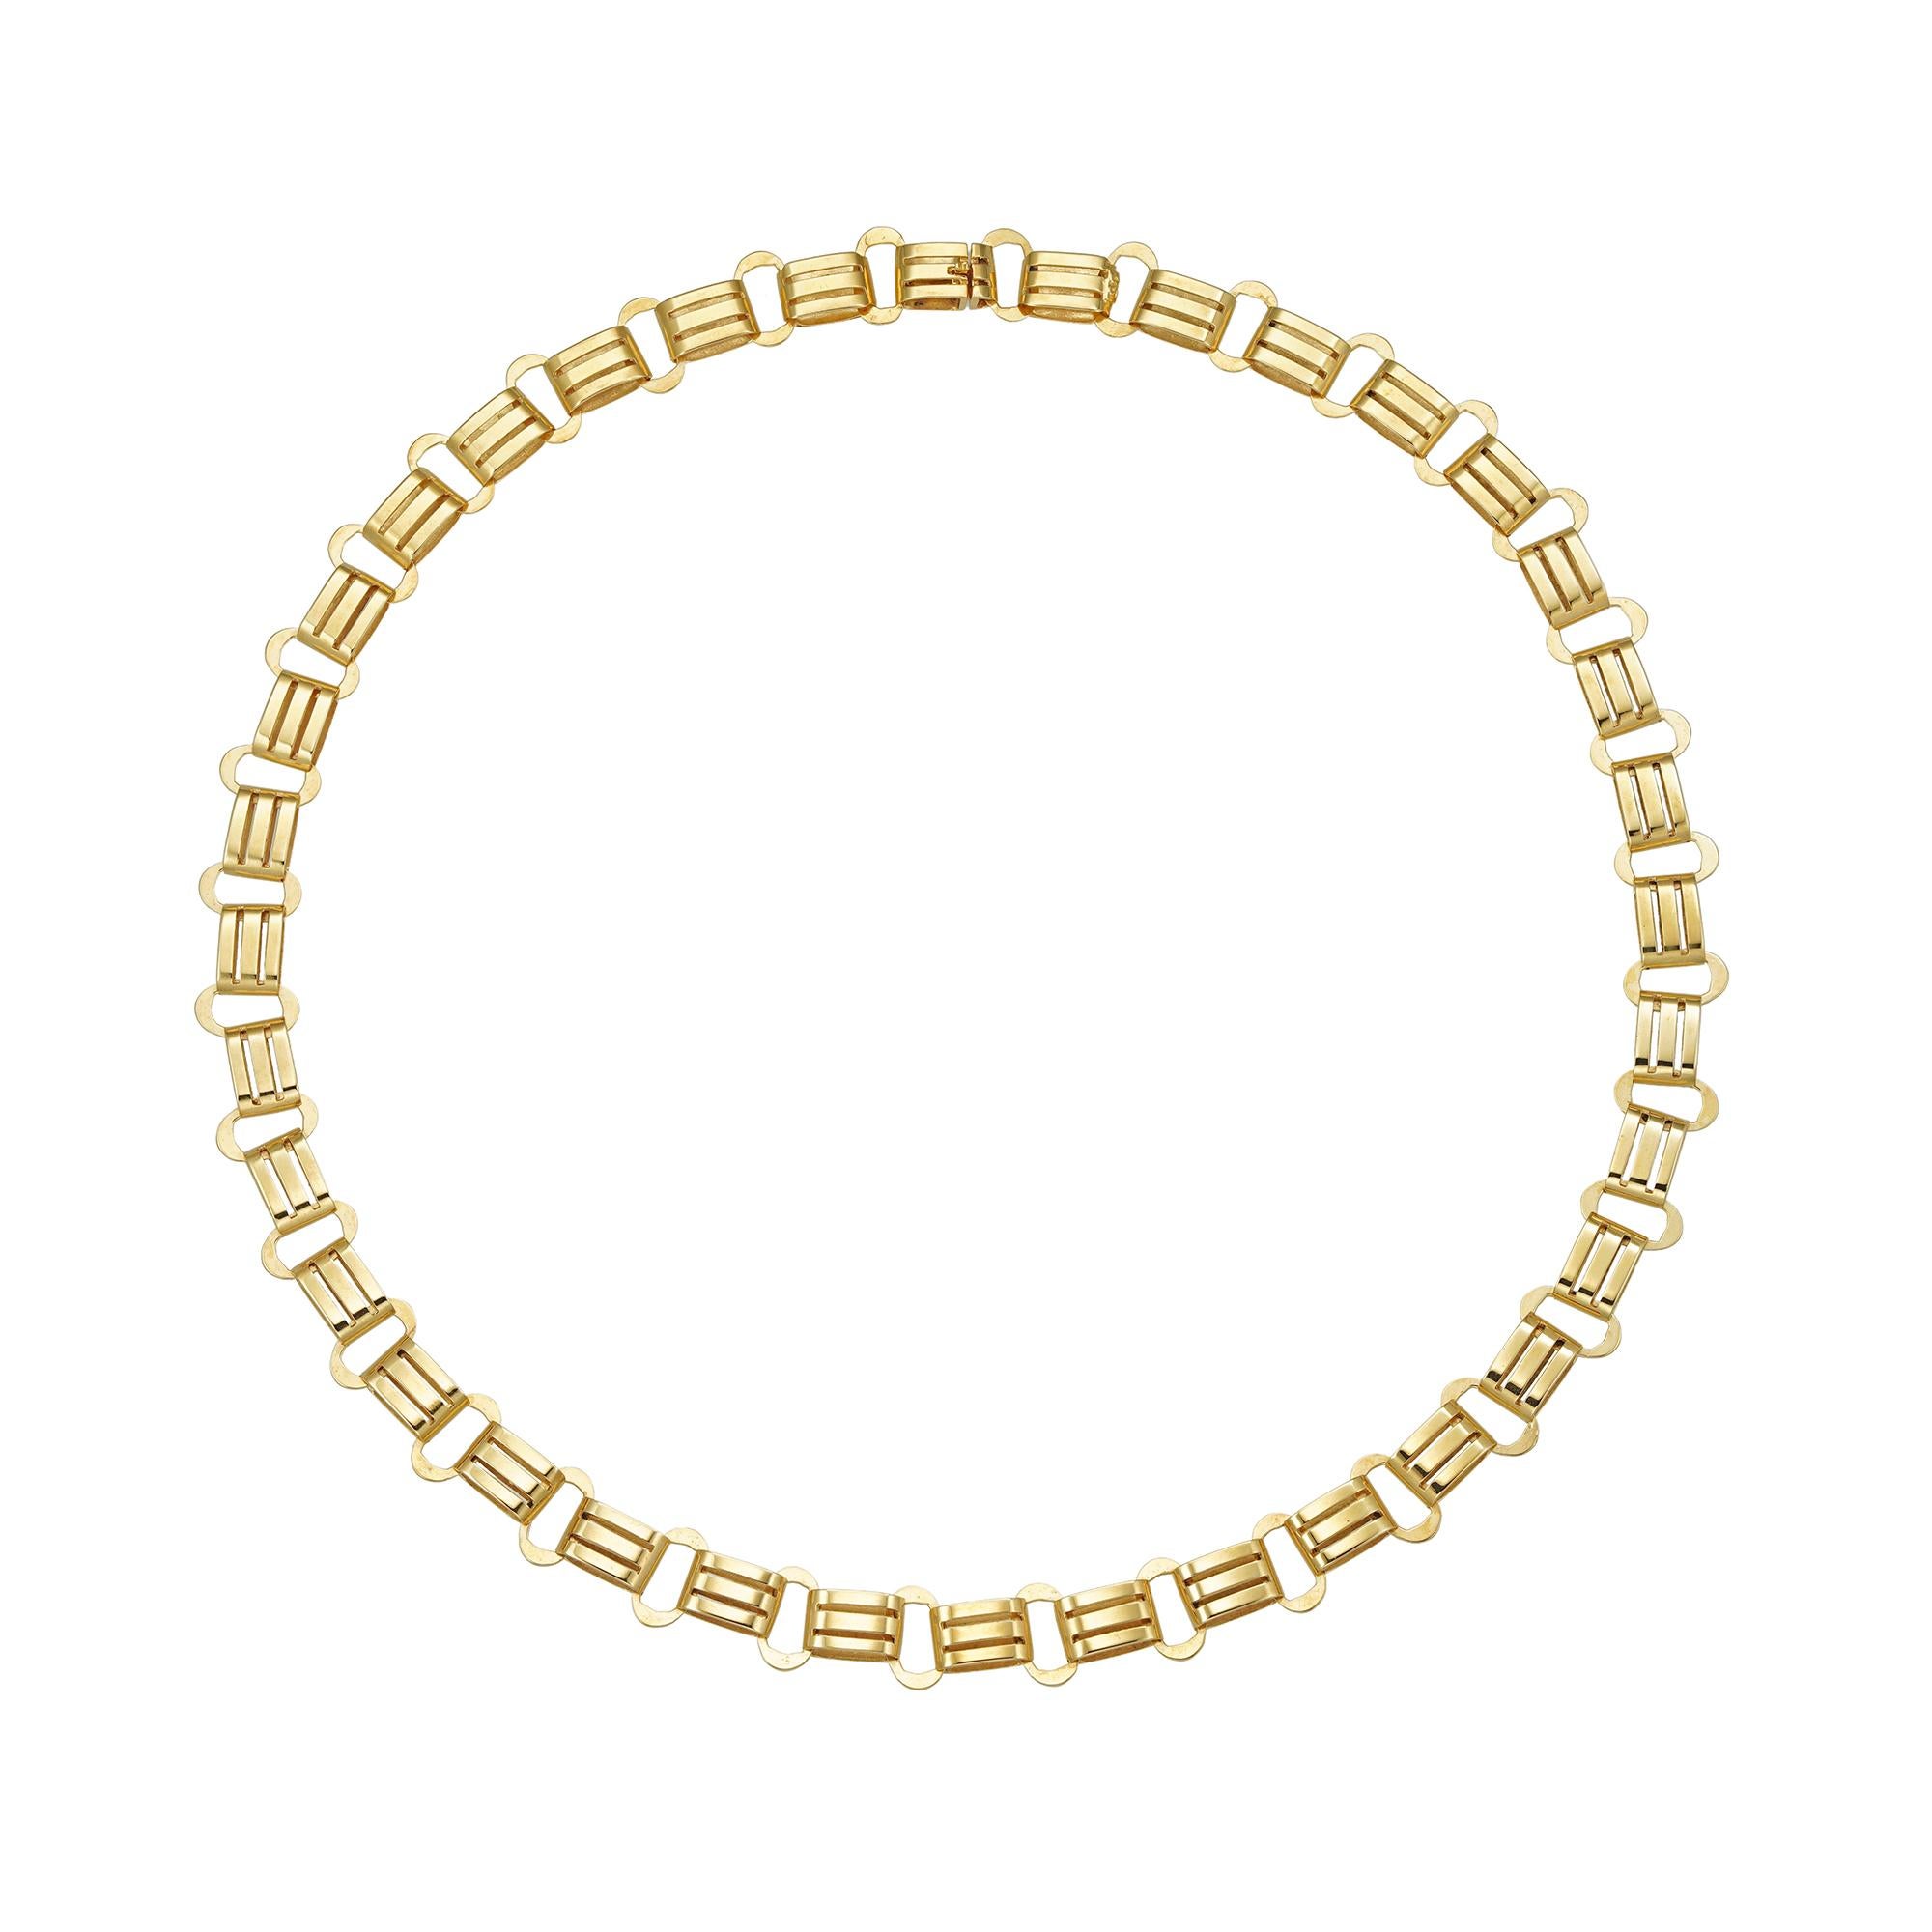 Eine spätviktorianische Goldkette, bestehend aus sechsunddreißig ovalen Gliedern, die mit breiteren, doppelreihigen, durchbrochenen Gliedern verbunden sind, mit  Versteckte Schließe, aus 9-karätigem Gold, um 1890, Maße ca. 38,5 x 0,9 cm,